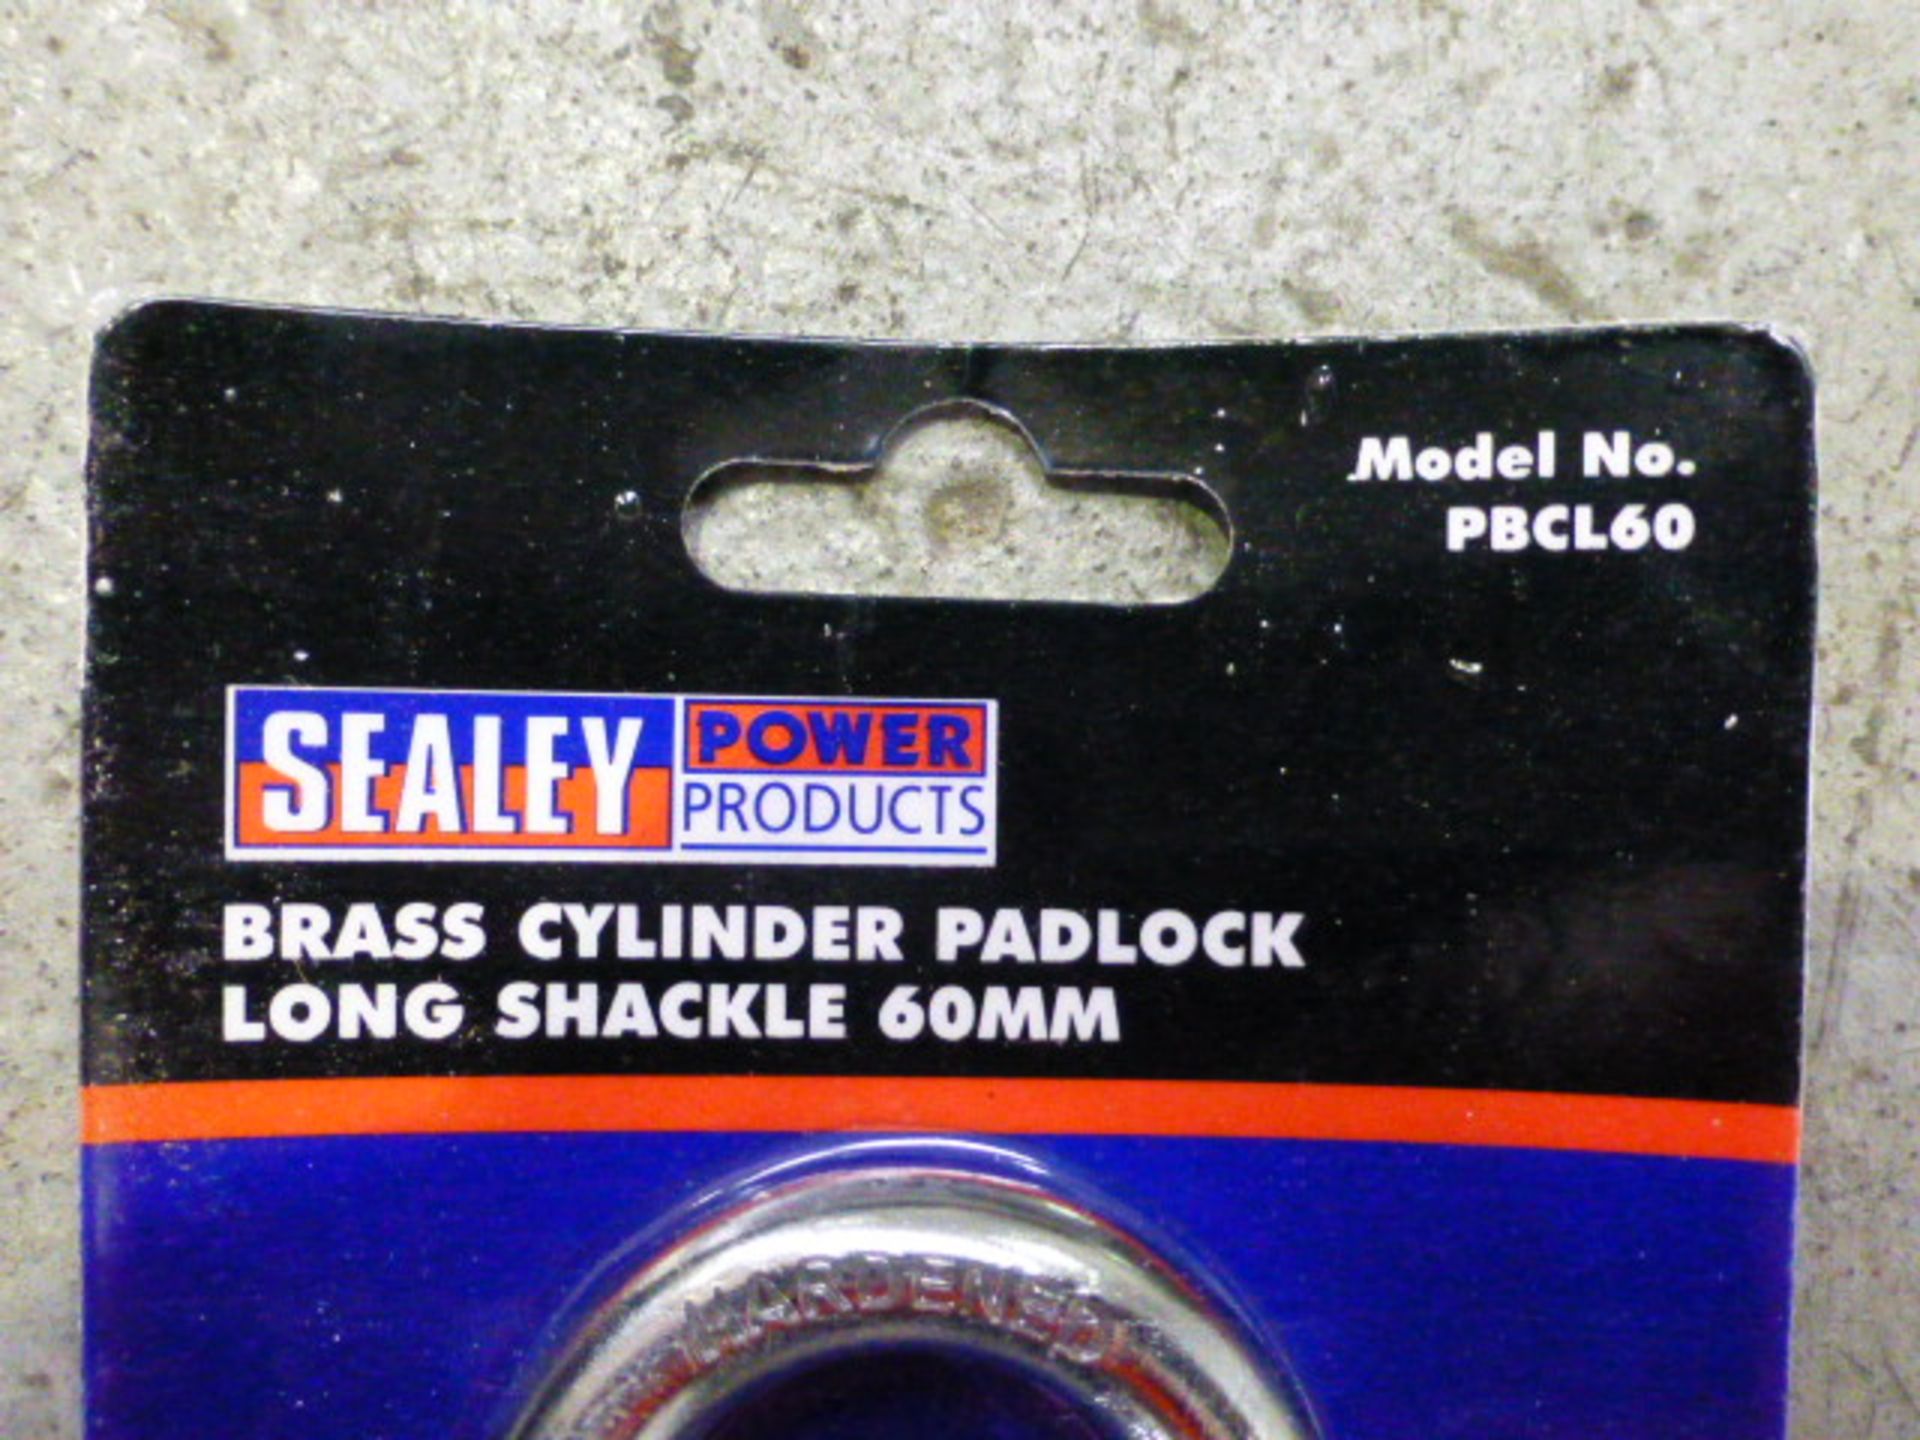 6 x Sealey Long Shackle Padlocks P/No PBCL60 - Image 3 of 3